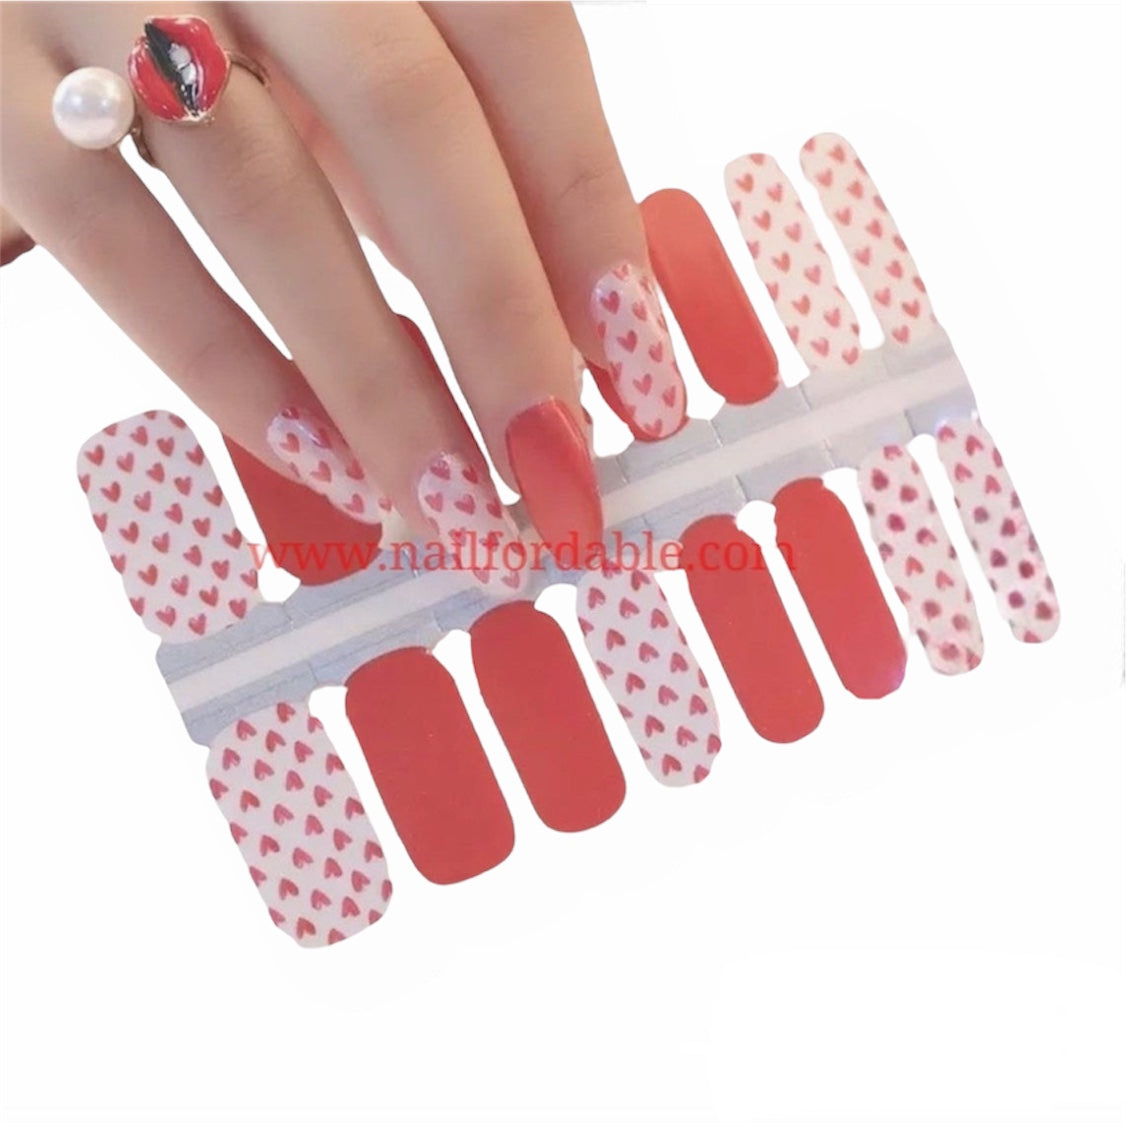 Red Hearts | Nail Wraps | Nail Stickers | Nail Strips | Gel Nails | Nail Polish Wraps - Nailfordable